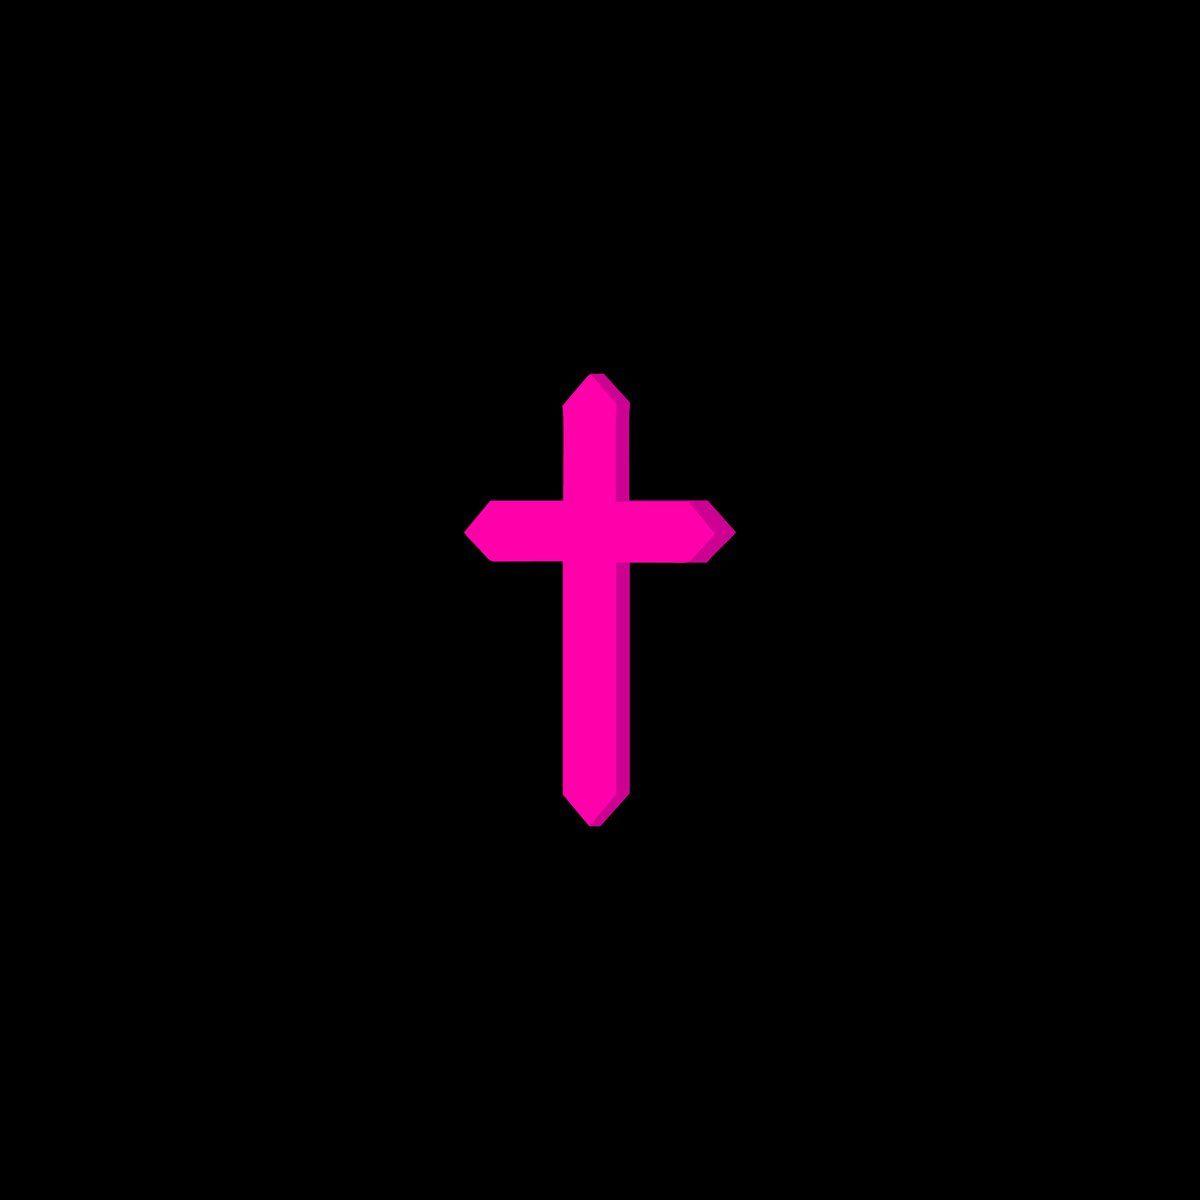 Pink Cross Logo - KHALID on Twitter: 